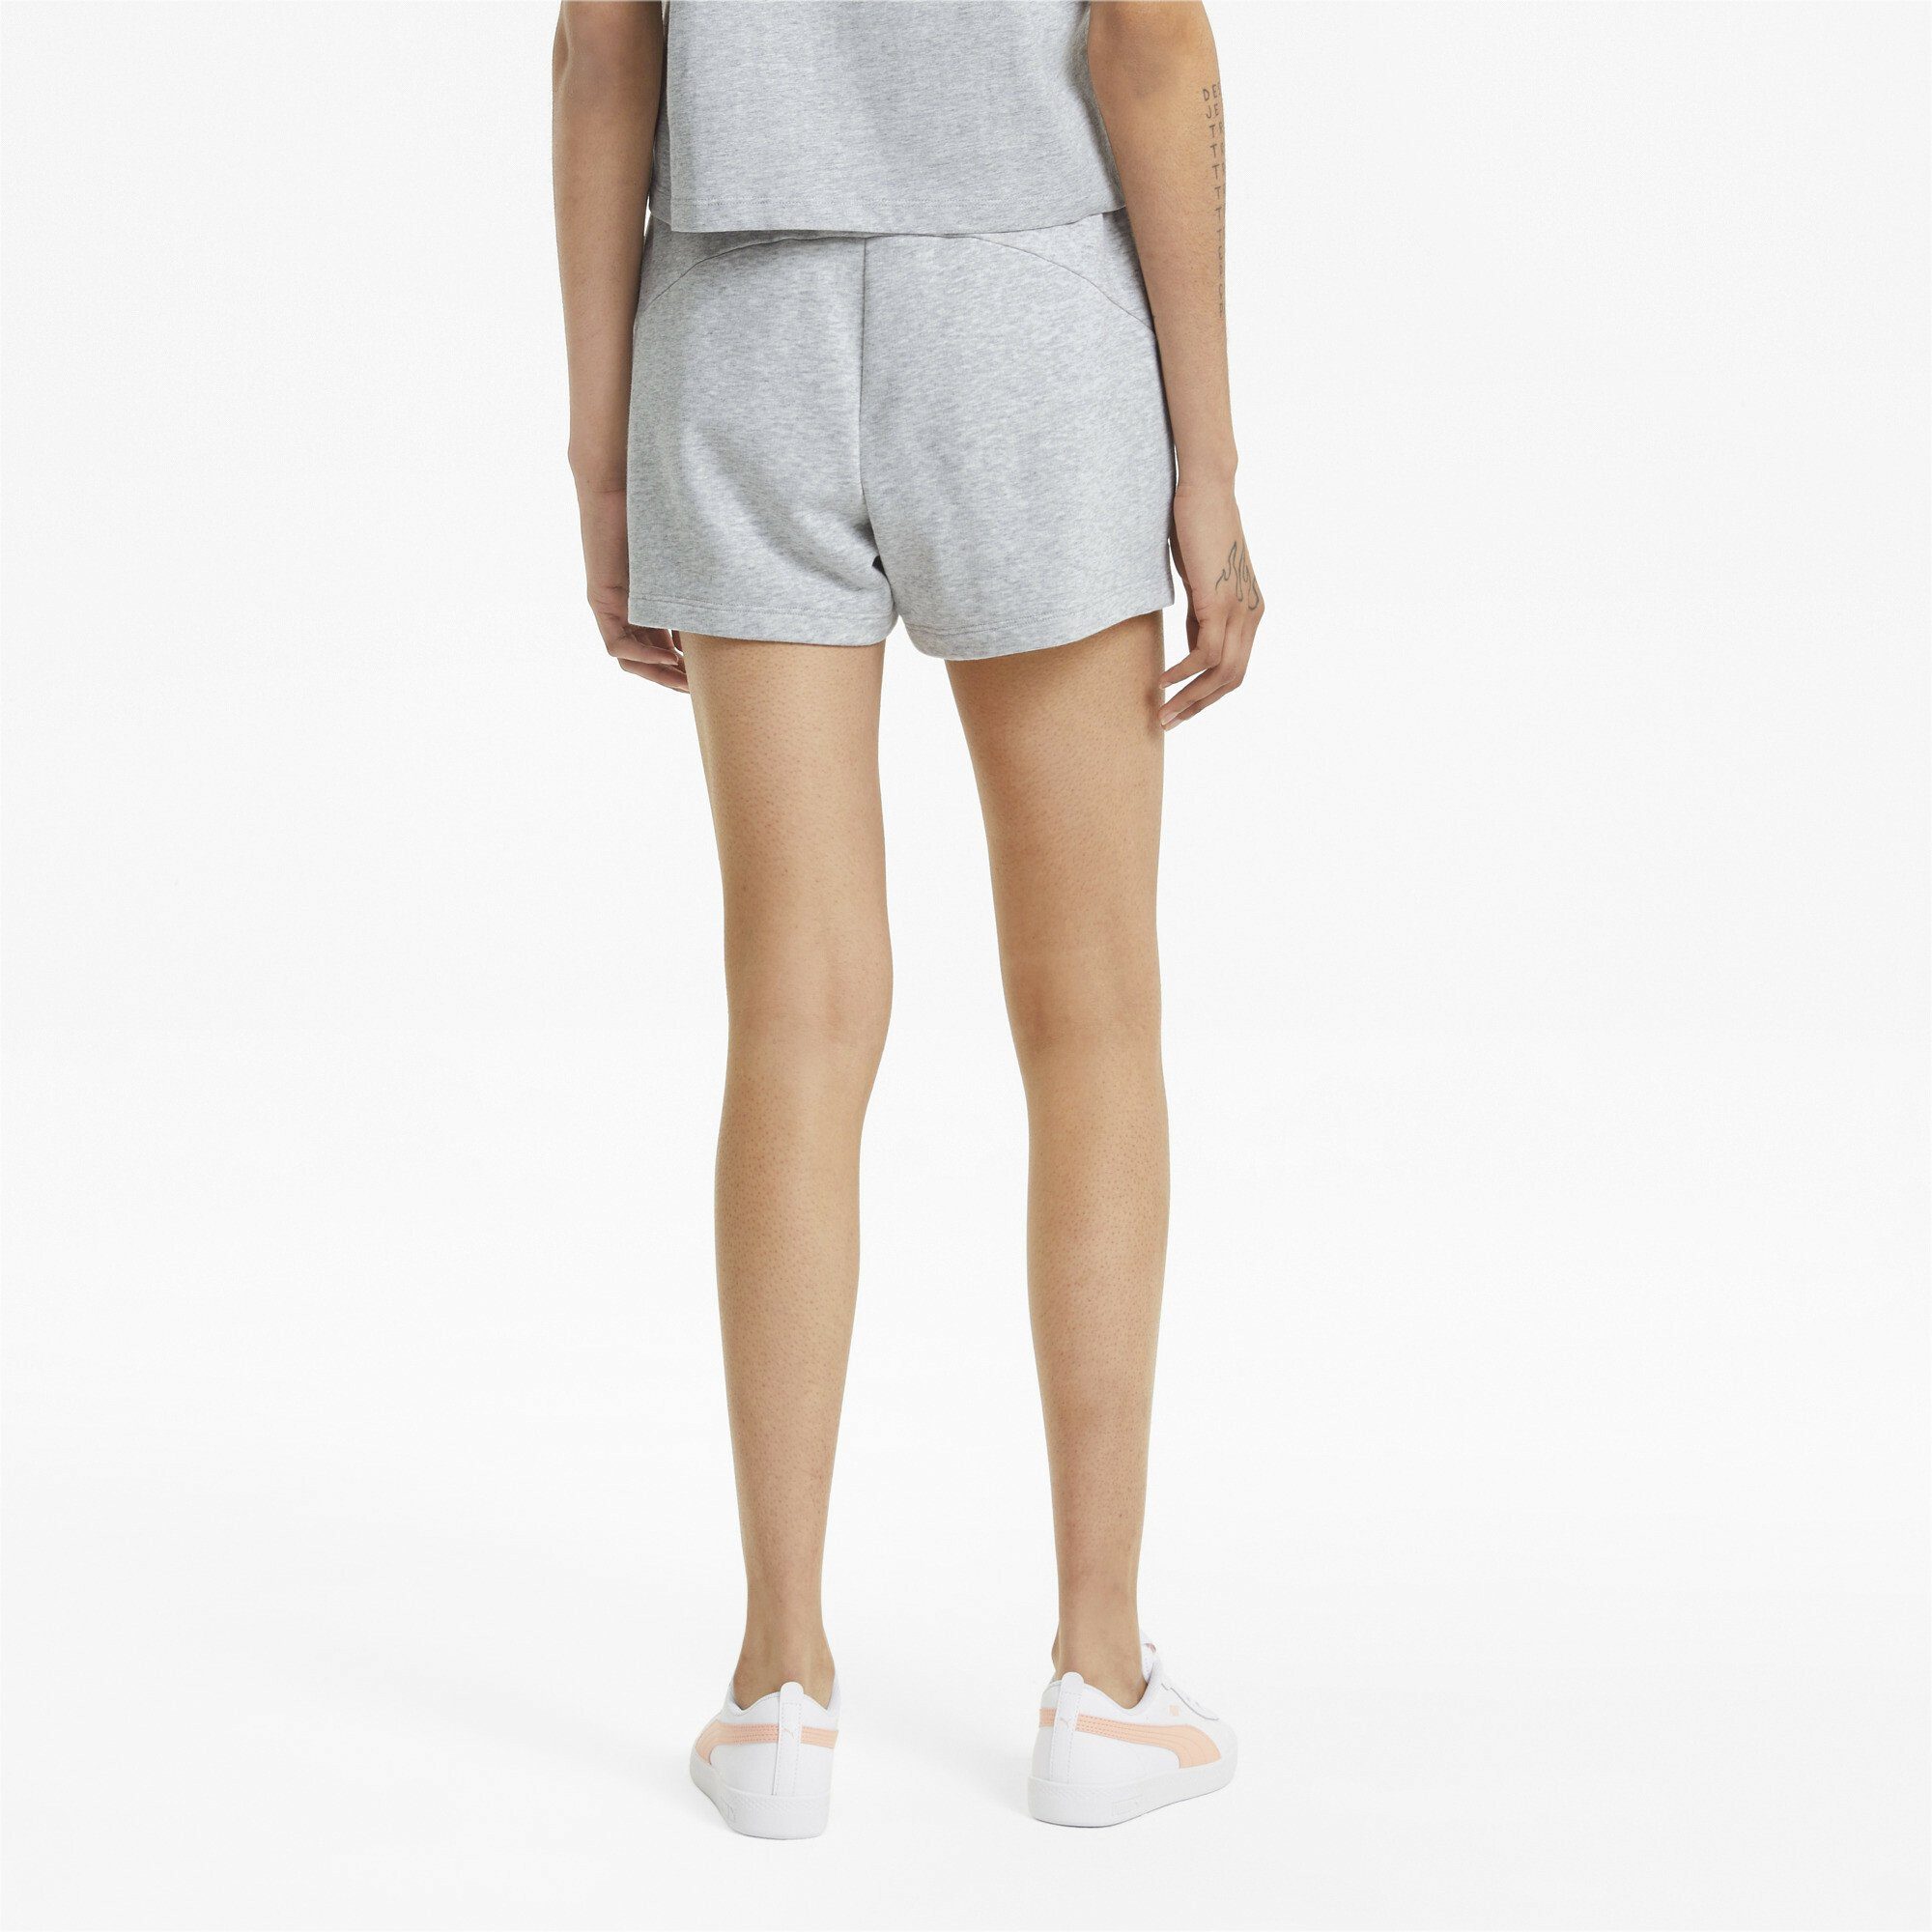 Damen PUMA Sporthose Gray Shorts Heather Essentials Light